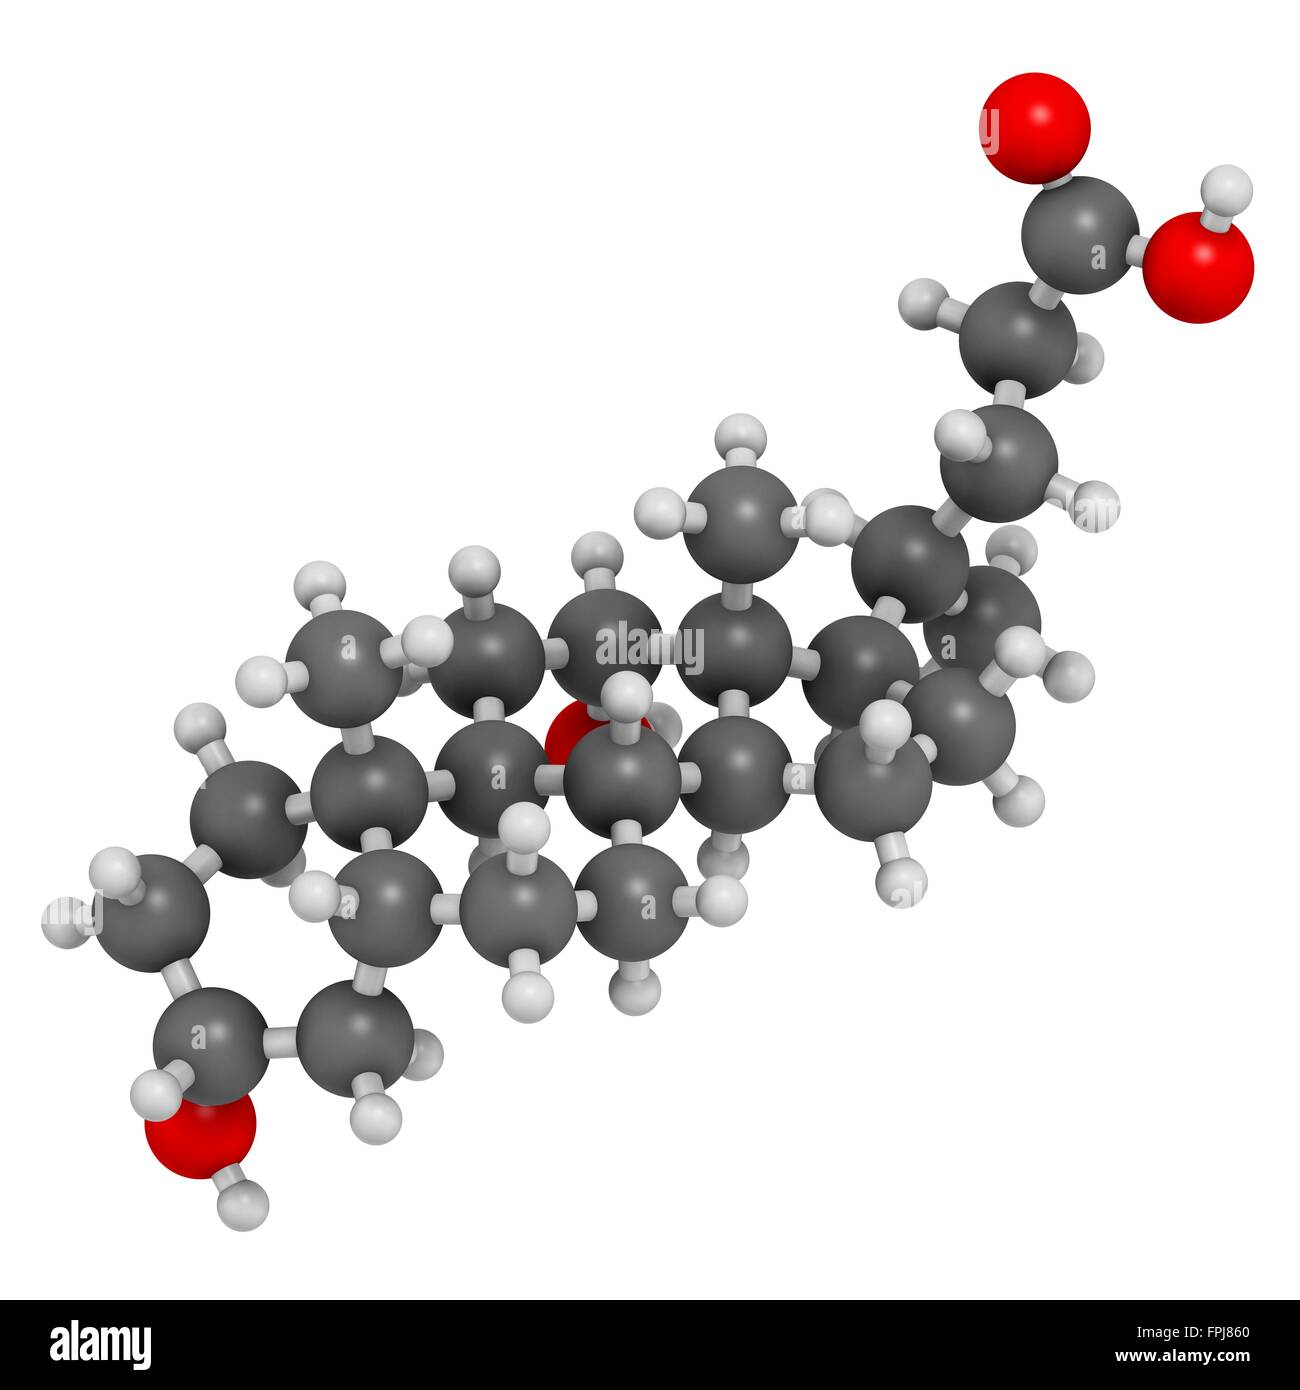 Deoxycholic Säure Gallensäure Molekül. Auch verwendet als Droge. Atome werden als Kugeln mit C Venti al Farbkodierung dargestellt: Stockfoto